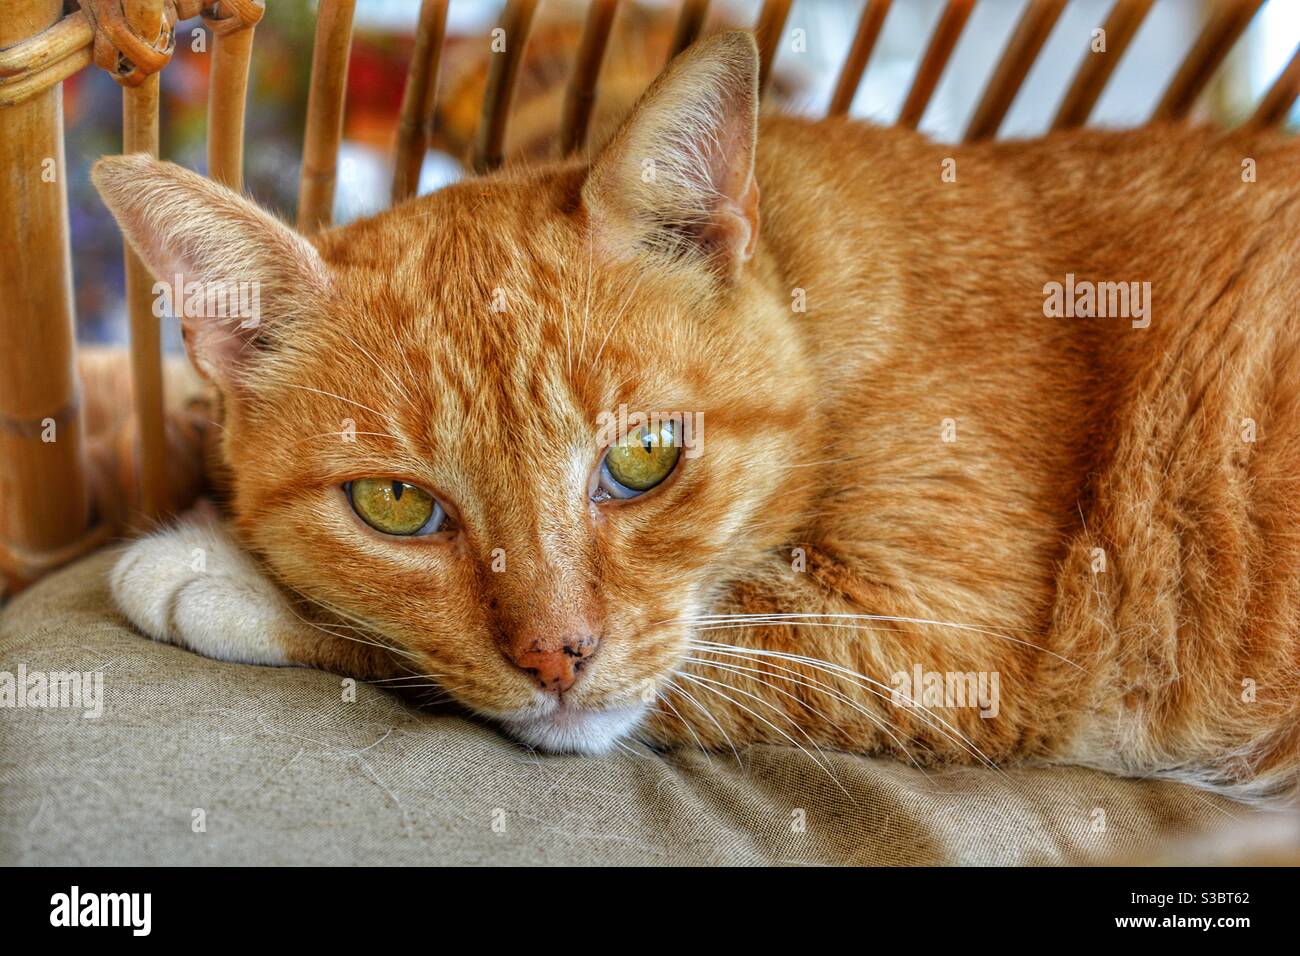 Zenzero gatto tabby, ritratto, guardando la macchina fotografica Foto Stock